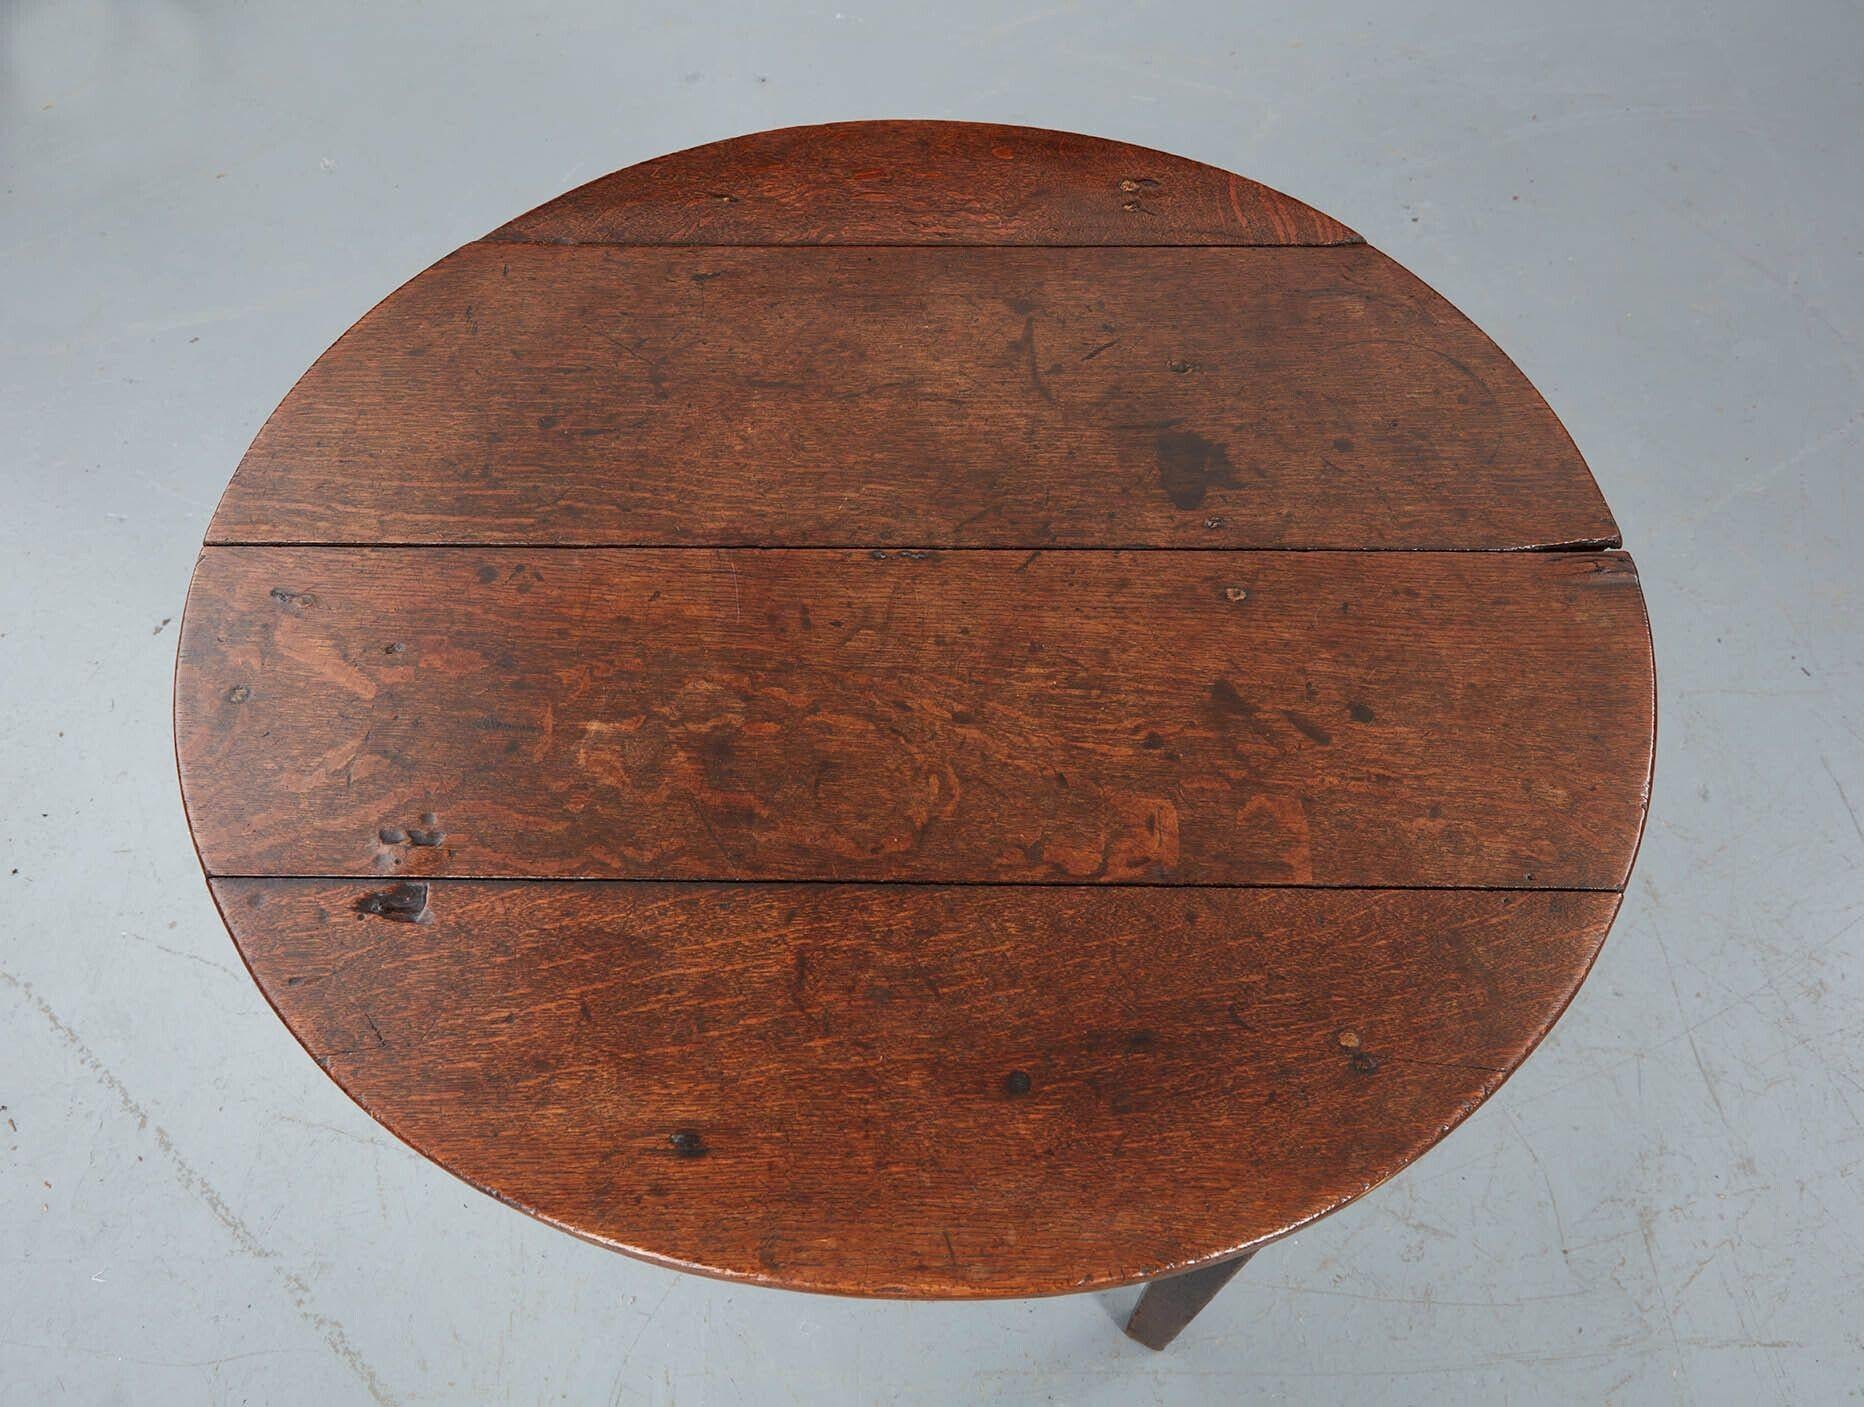 Cricket-Tisch aus Eichenholz mit vier Brettern und Schürze auf drei vierteiligen Beinen. Gute Größe für einen Esstisch für zwei Personen oder als Lampentisch neben einem Sofa. Zustand wie im Landhausstil - einige Risse und Absplitterungen.